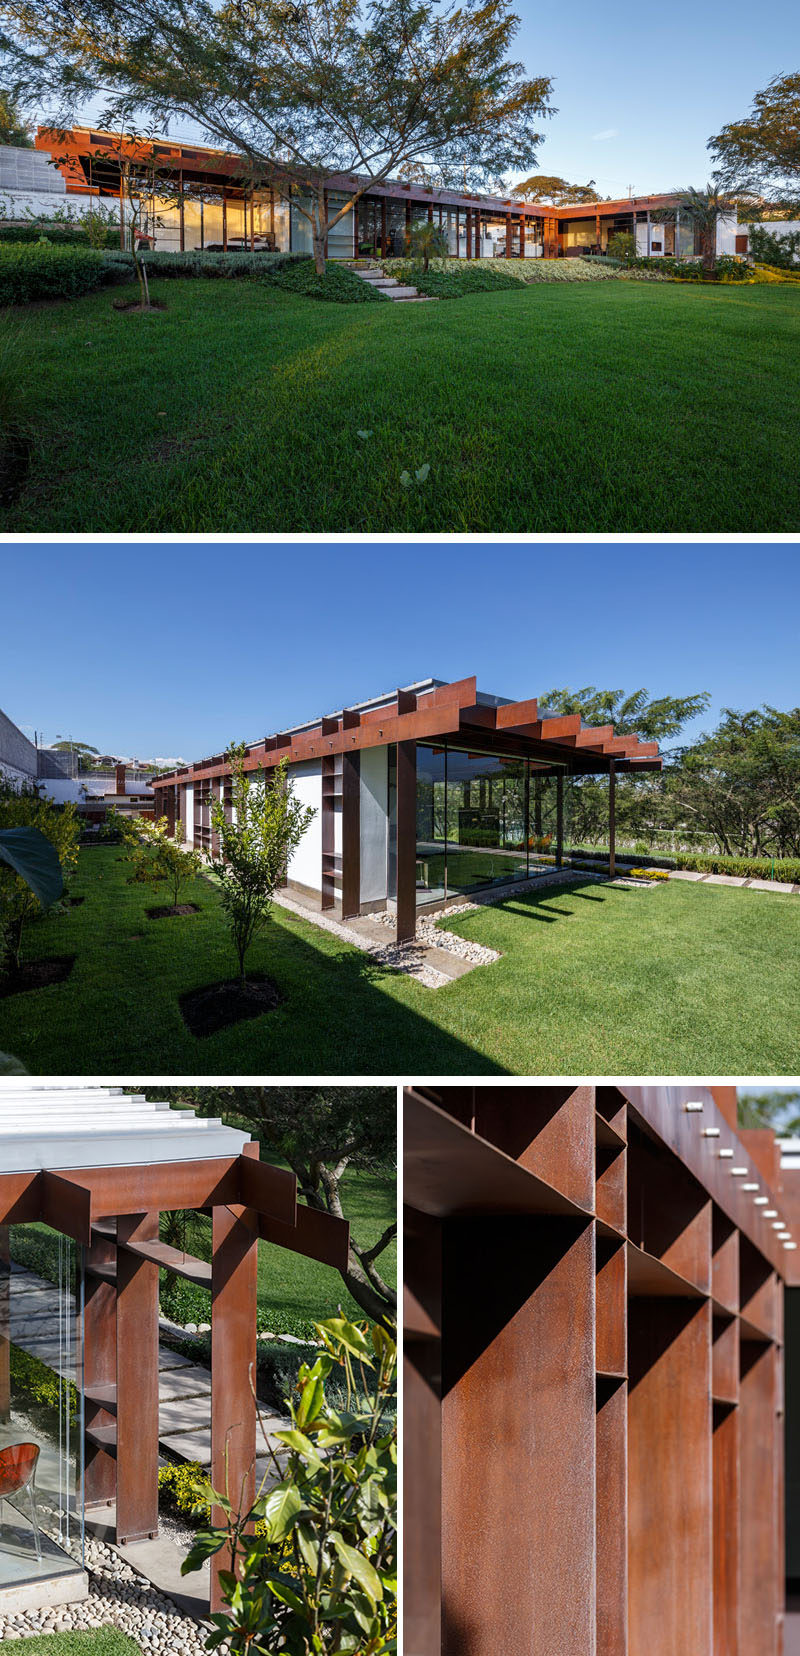  Компания Arquitectura x спроектировала современный дом из стали и стекла для семьи в Кито, Эквадор, с большим садом и гостиной на открытом воздухе. #SteelHouse #ModernHouse 